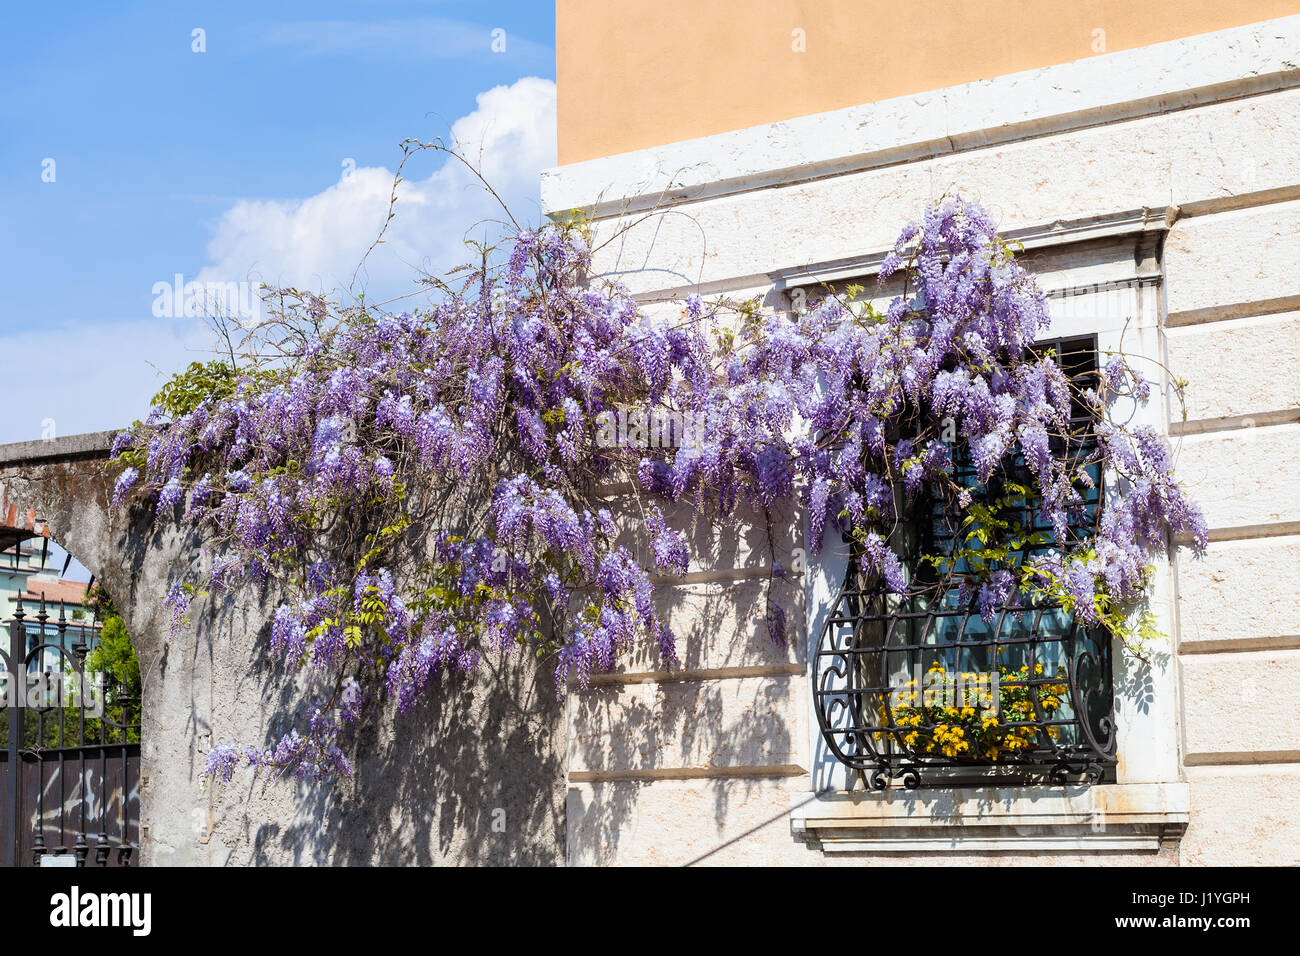 Voyage d'Italie - la floraison des plantes de glycines sur la fenêtre de maison urbaine dans la ville de Vérone au printemps Banque D'Images